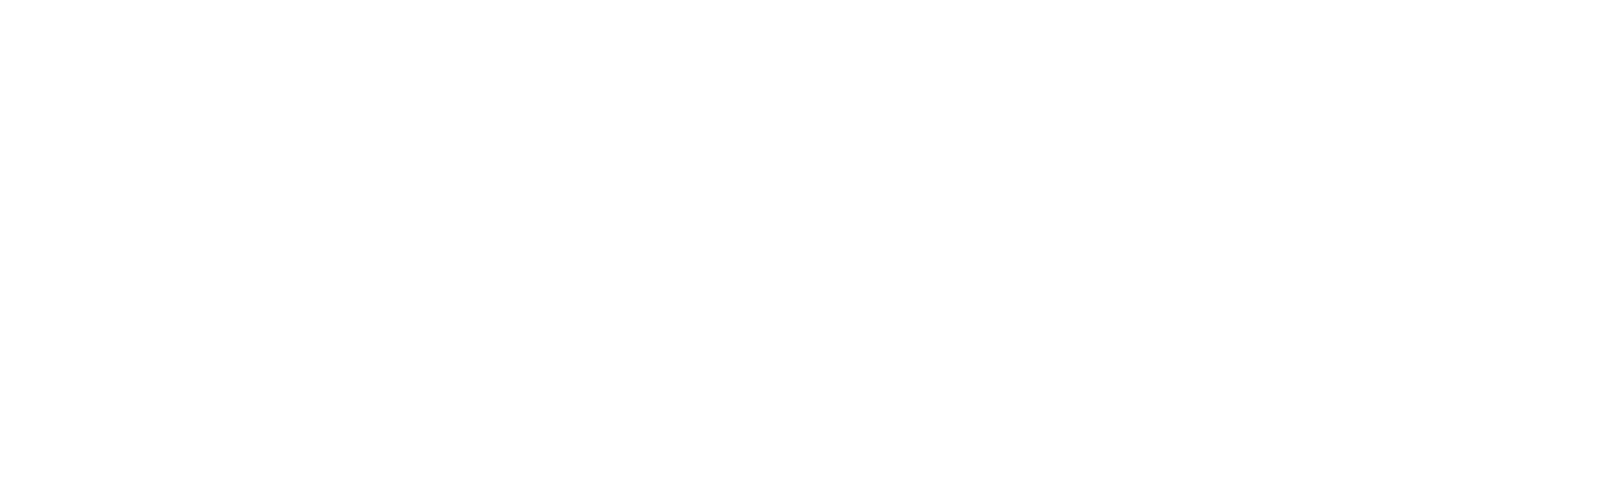 Best European Bike Tours